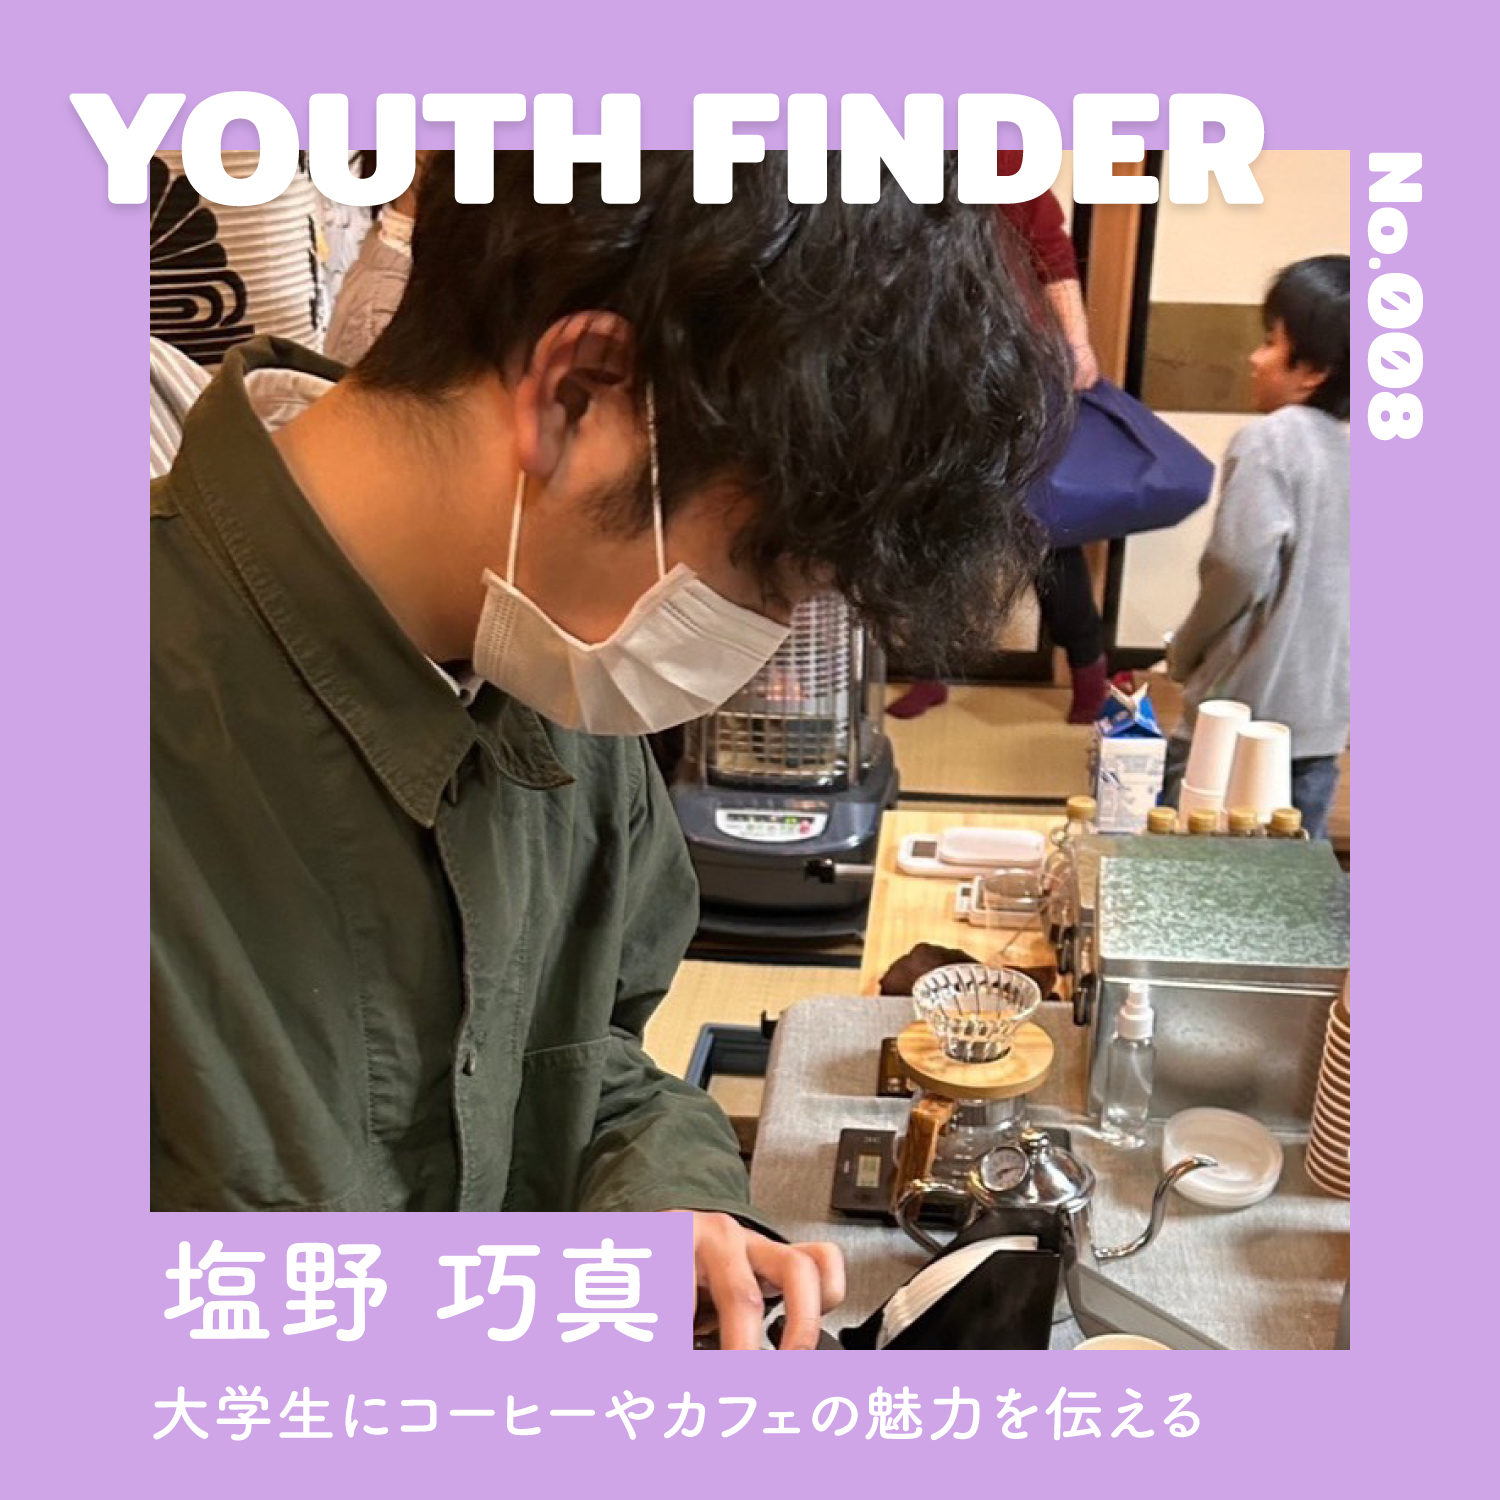 大学生にコーヒーやカフェの魅力を伝える 塩野巧真さん【Youth Finder】のサムネイル